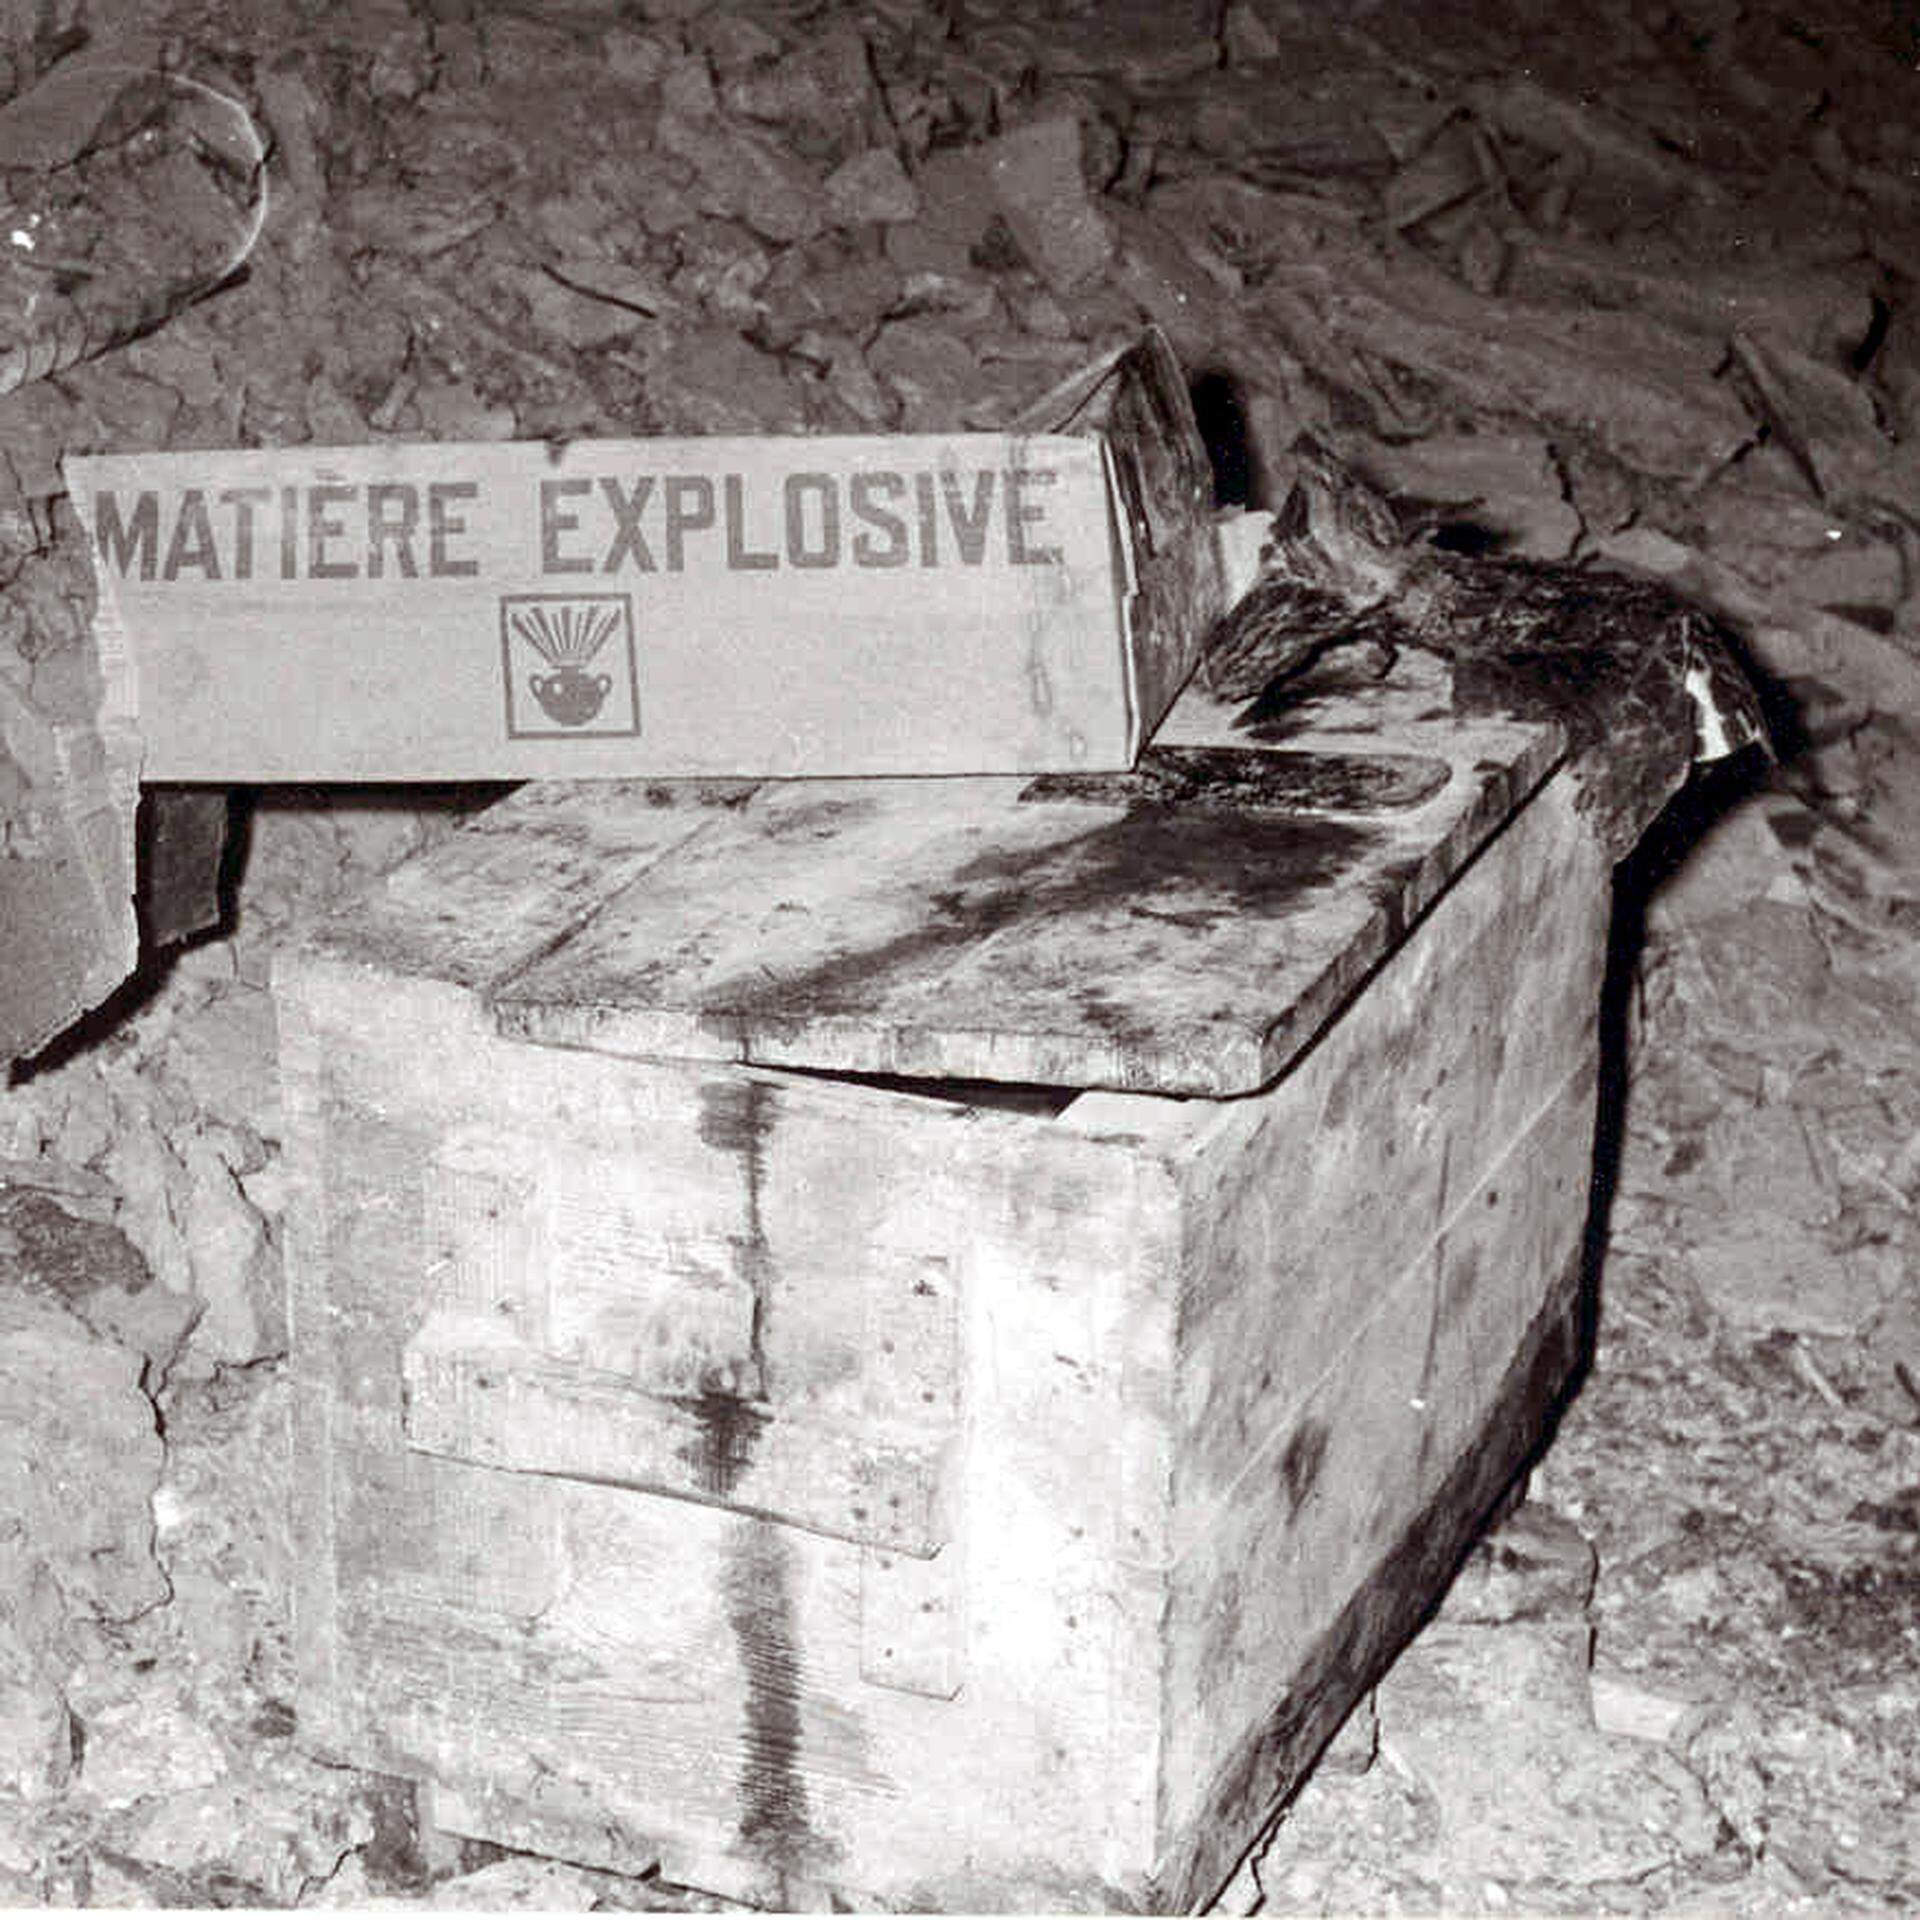 Der Sprengstoff wurde in der Gipsmine in einer unverschlossenen Kiste gelagert. Die Fotos stammen von einem zweiten Einbruch, der den Bommeleeërn zugerechnet wird, im Februar 1985.